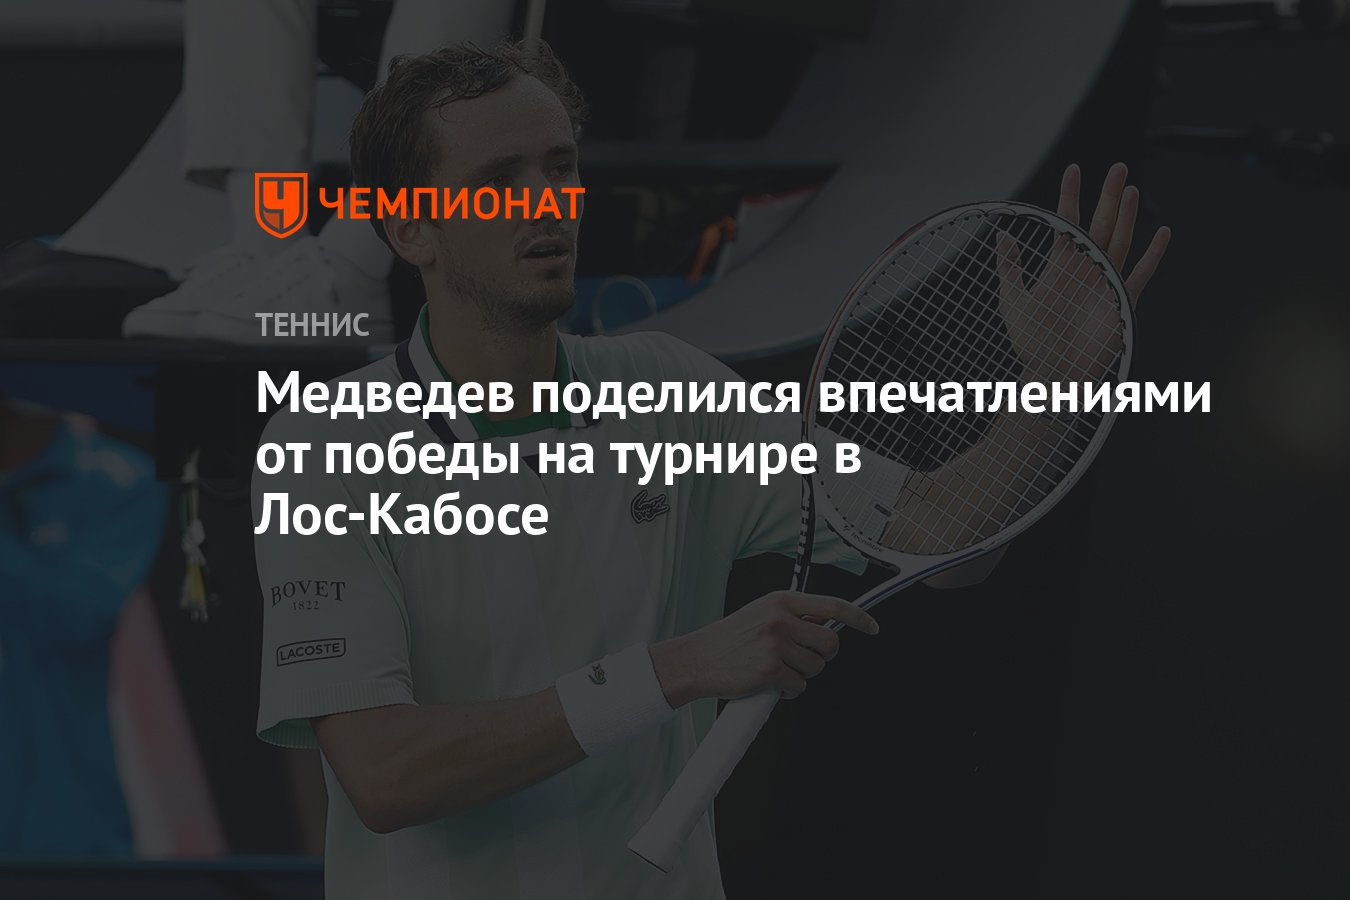 Медведев поделился впечатлениями от победы на турнире в Лос-Кабосе